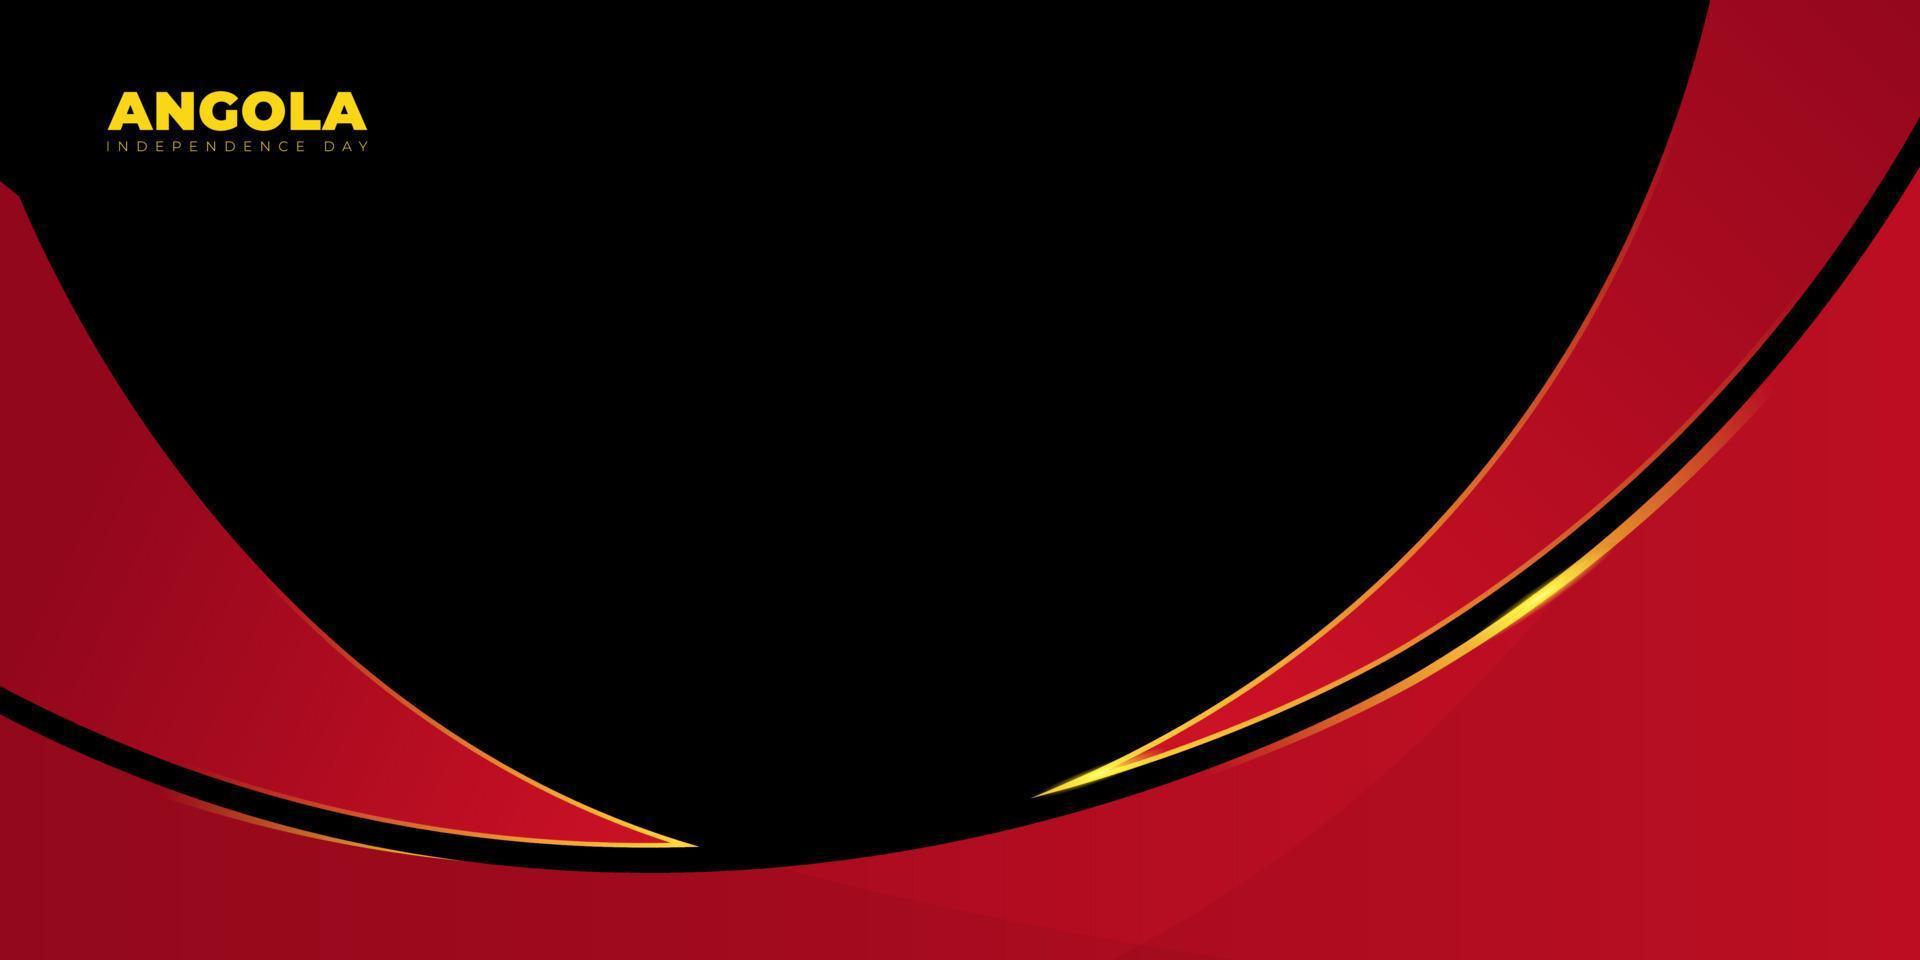 disegno astratto rosso e nero con sfondo nero. sfondo del giorno dell'indipendenza dell'Angola. vettore